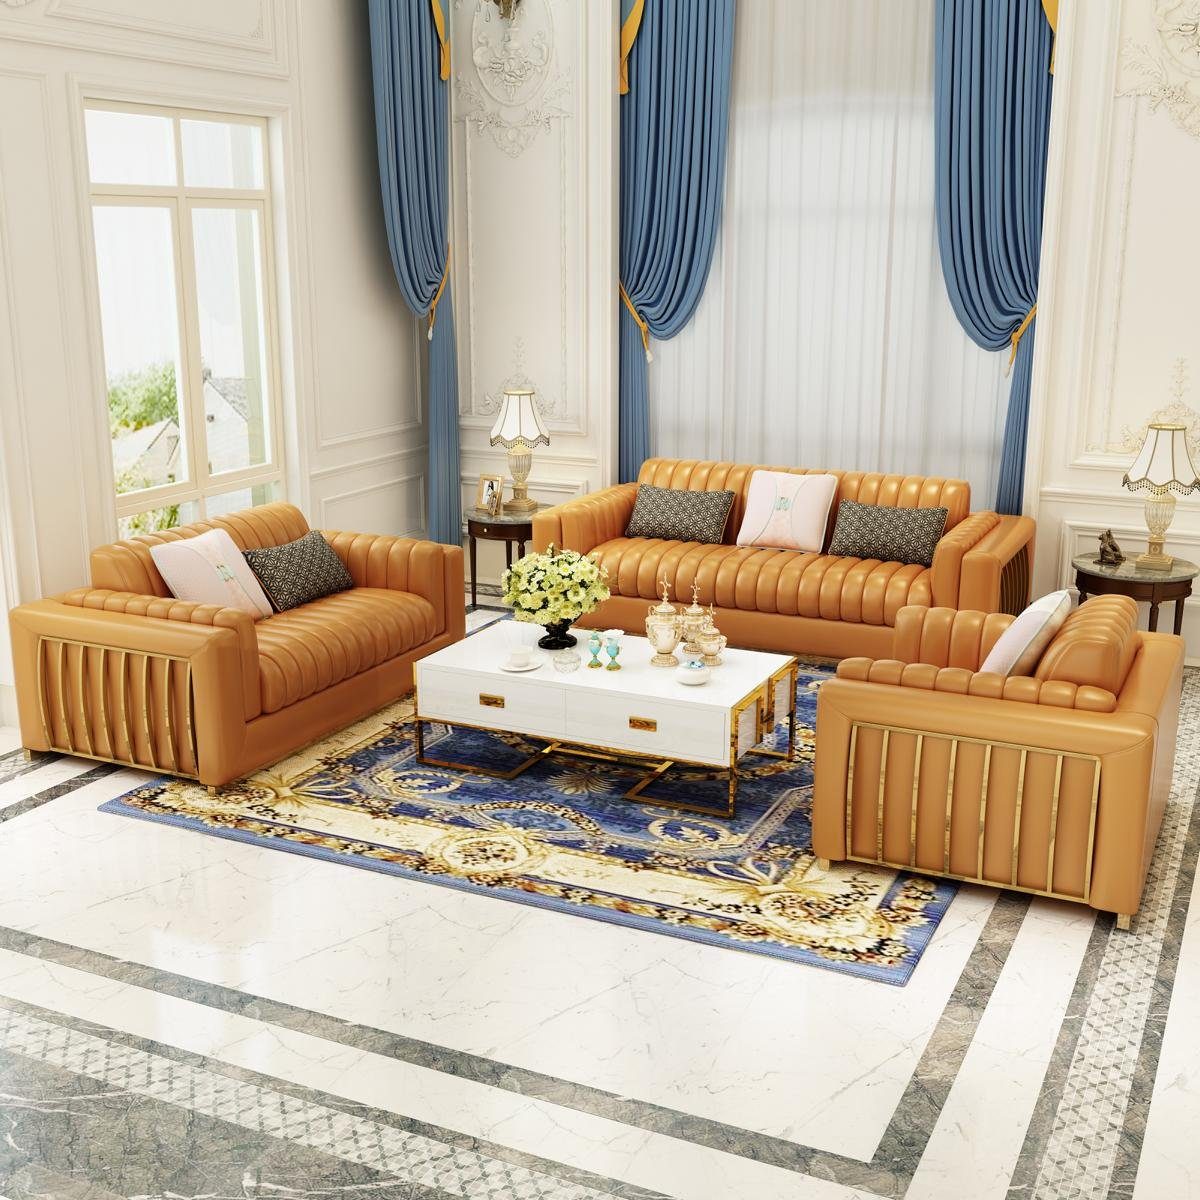 JVmoebel Sofa Luxus Ledersofa Couch Wohnlandschaft Garnitur Design 3+2+1 Sitzer Neu, Made in Europe Orange